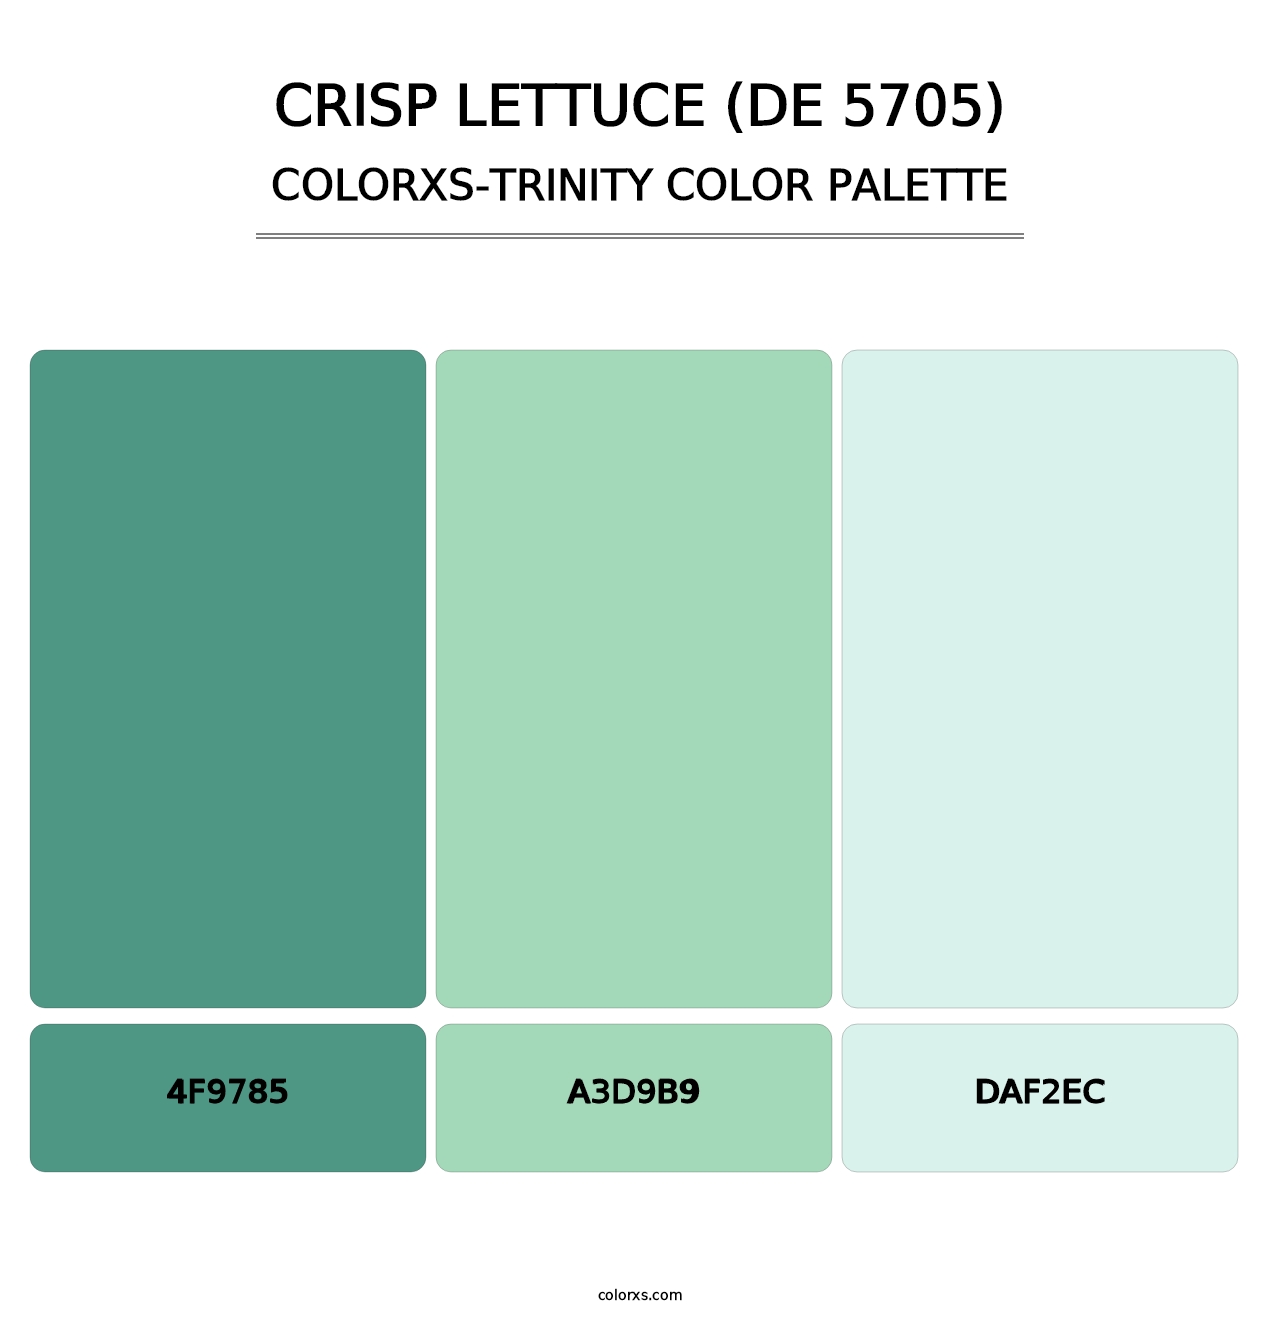 Crisp Lettuce (DE 5705) - Colorxs Trinity Palette